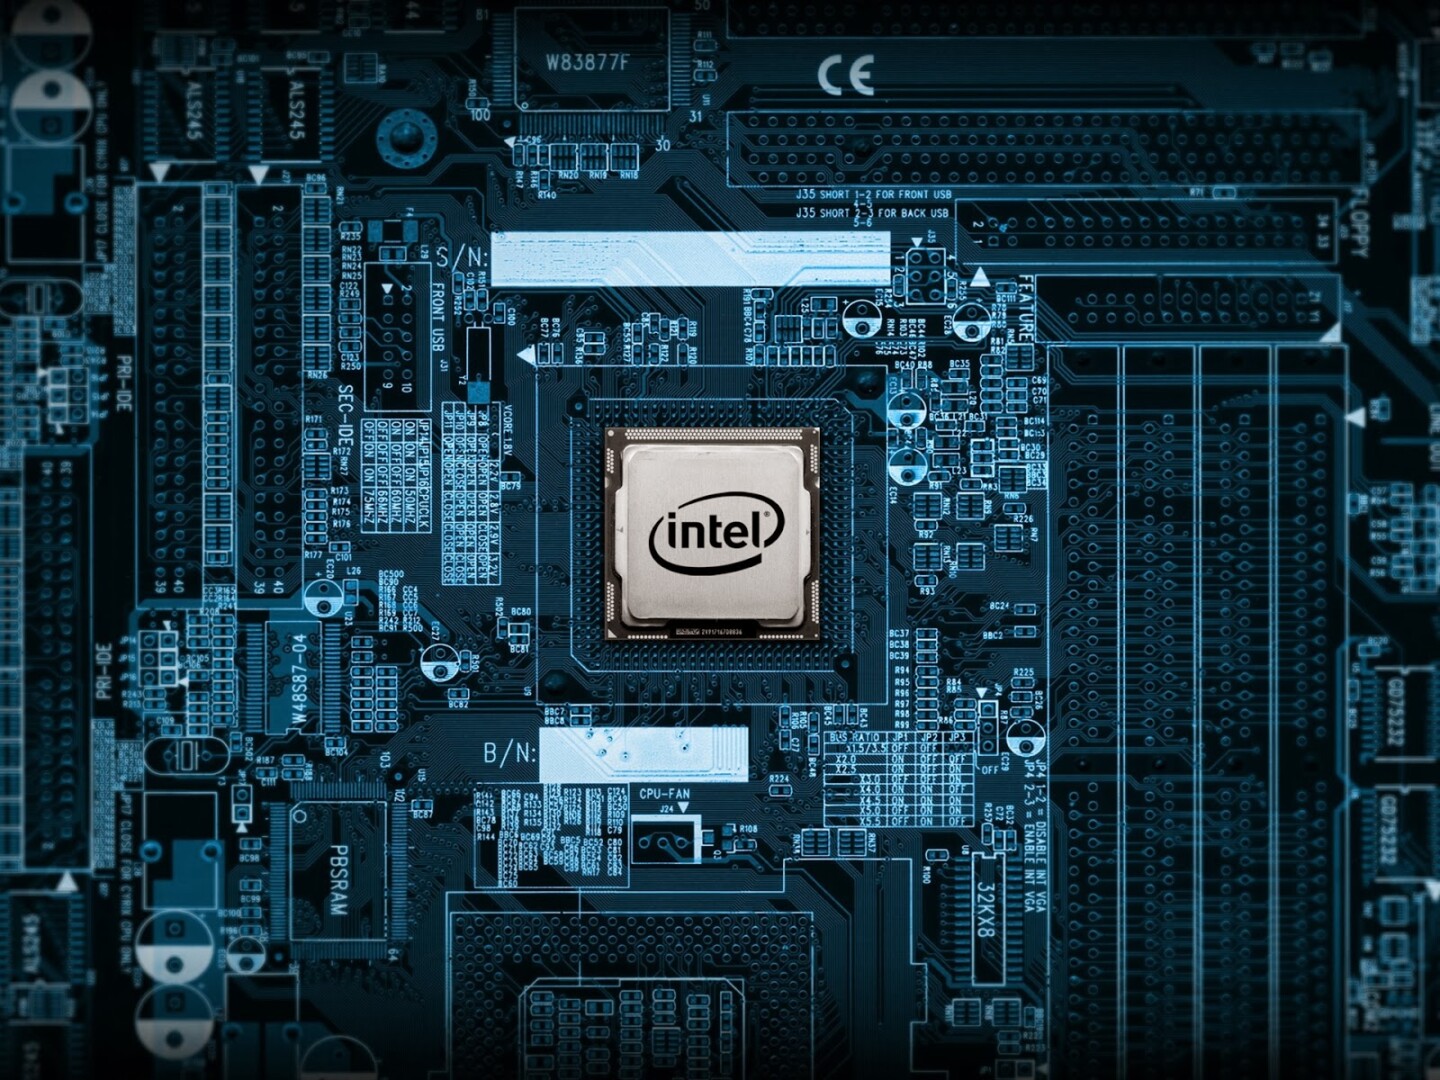 Architecture Day 2020: Intel reveló los secretos de la tecnología detrás de sus procesadores de 10nm